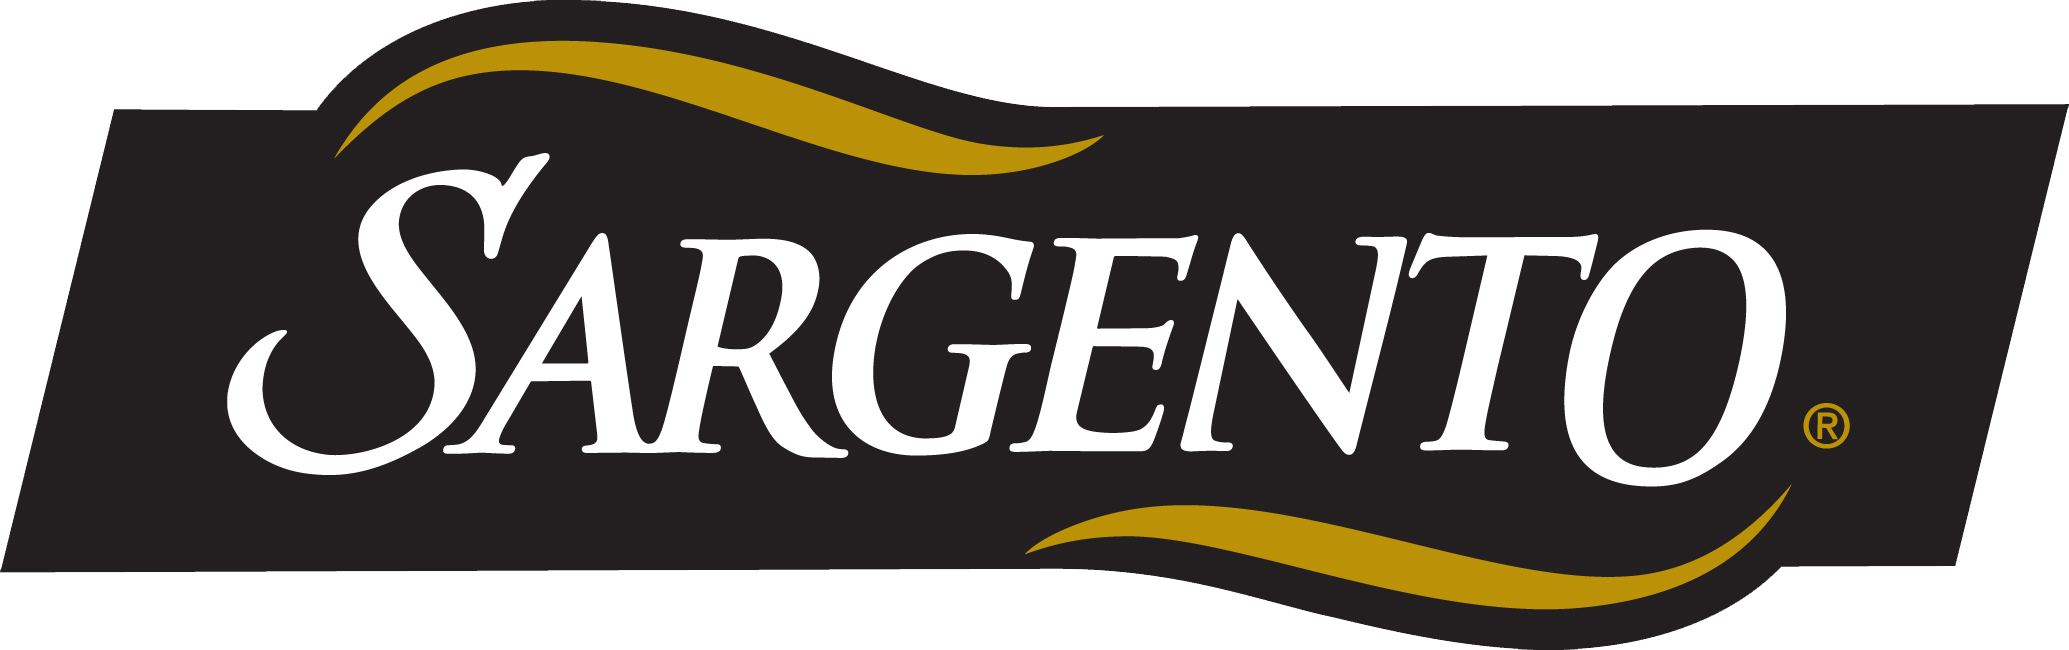 Sargento logo